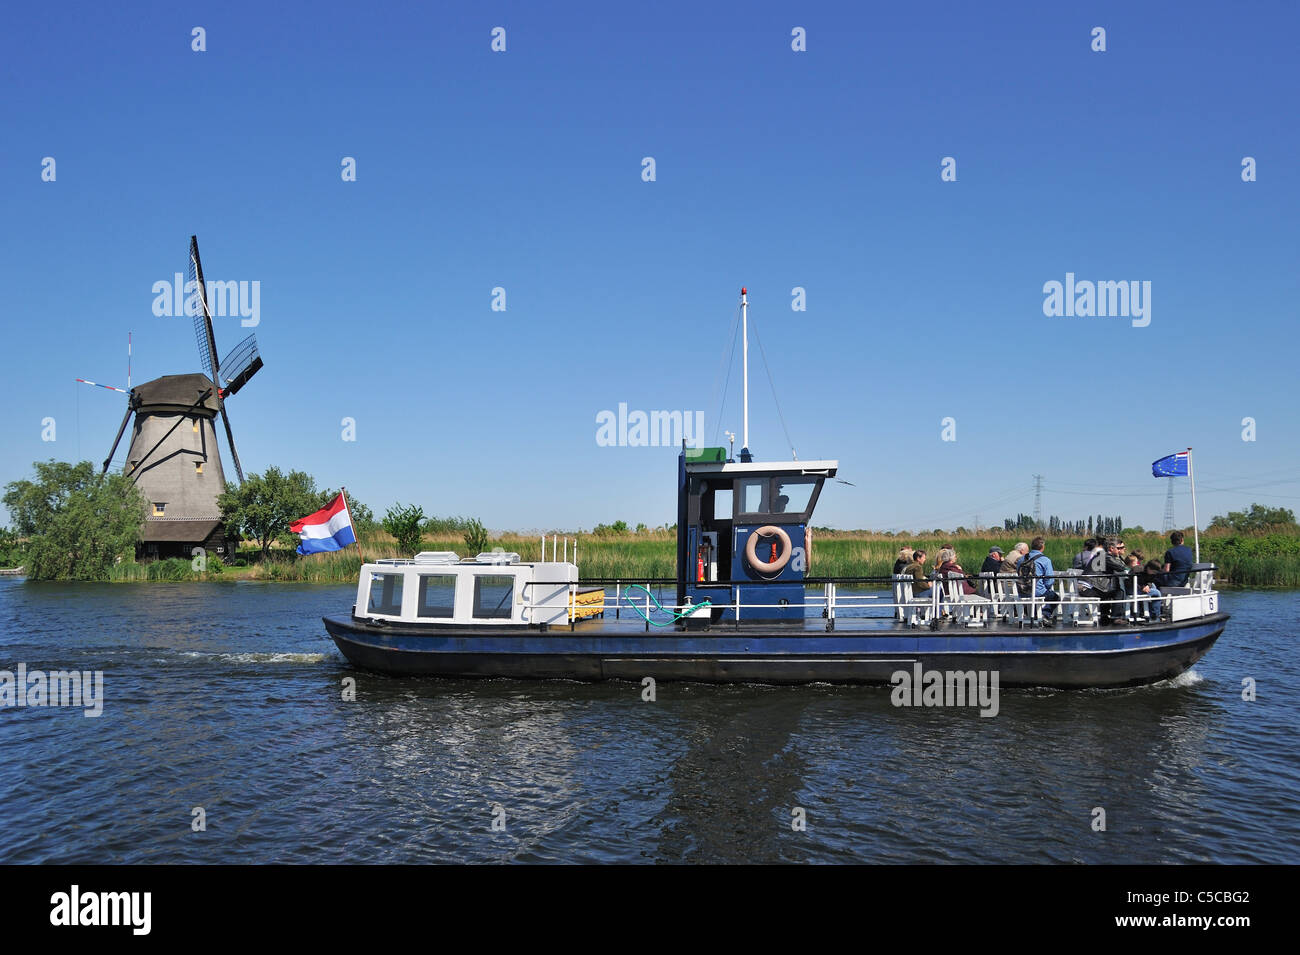 Les touristes en bateau et moulins à vent de Kinderdijk polder de chaume, Hollande méridionale, Pays-Bas Banque D'Images